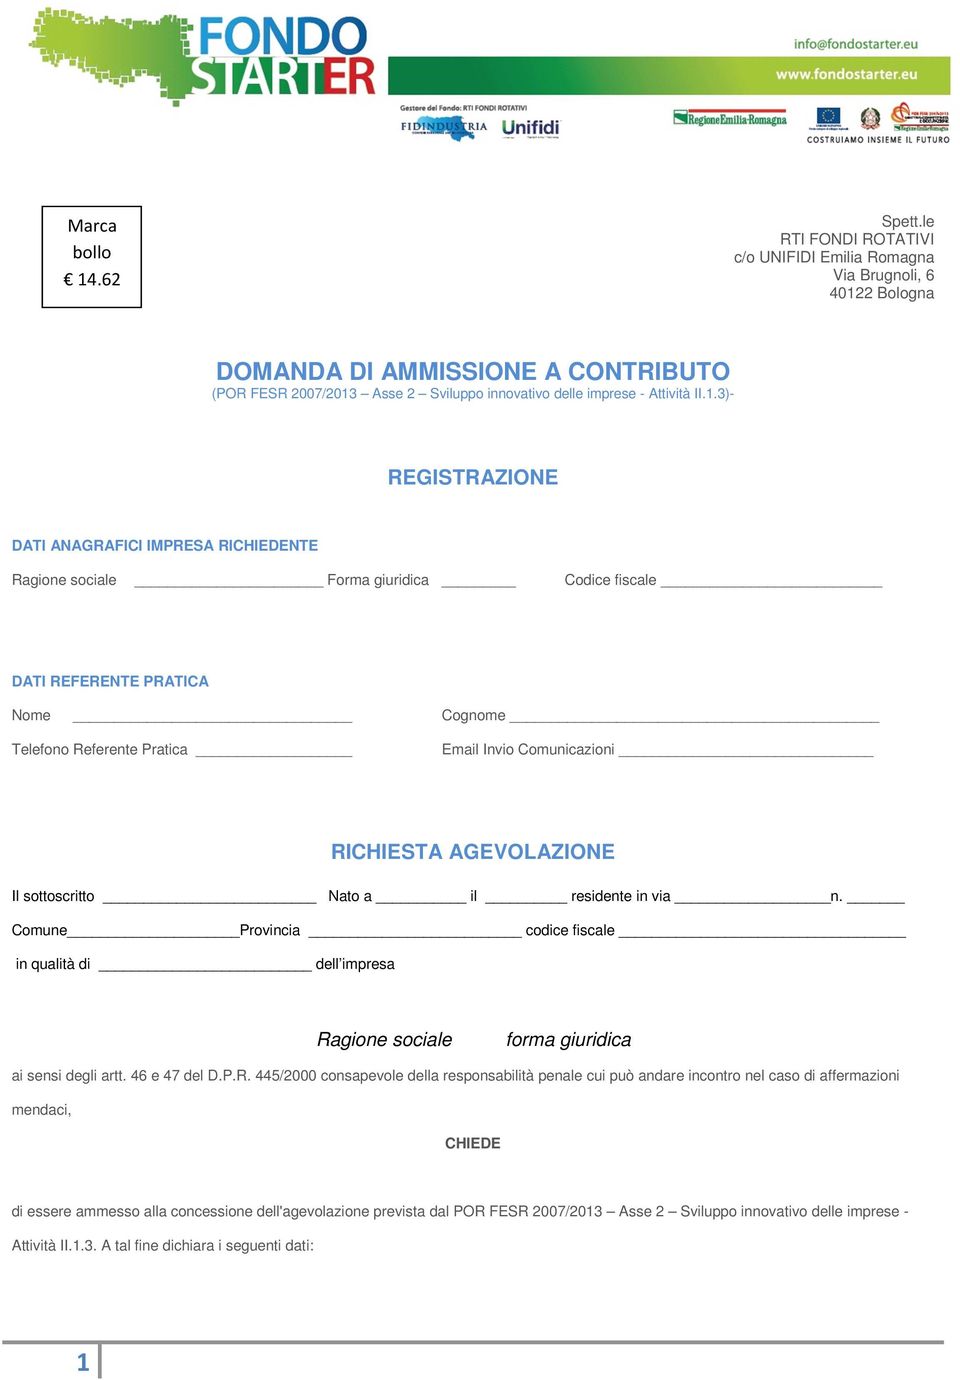 2 Bologna DOMANDA DI AMMISSIONE A CONTRIBUTO (POR FESR 2007/2013